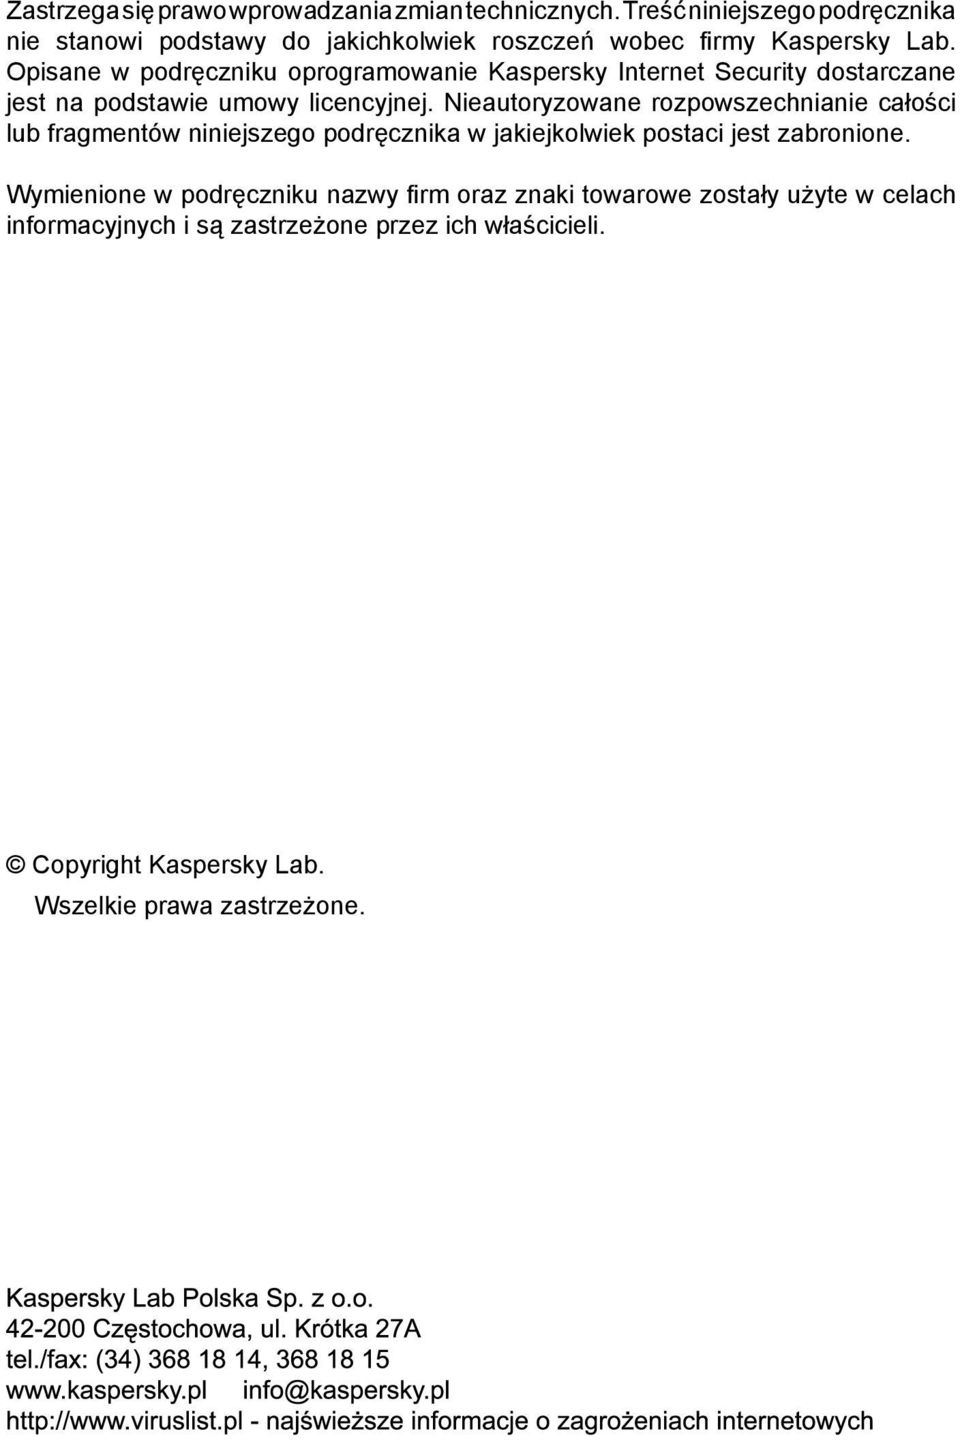 Opisane w podręczniku oprogramowanie Kaspersky Internet Security dostarczane jest na podstawie umowy licencyjnej.